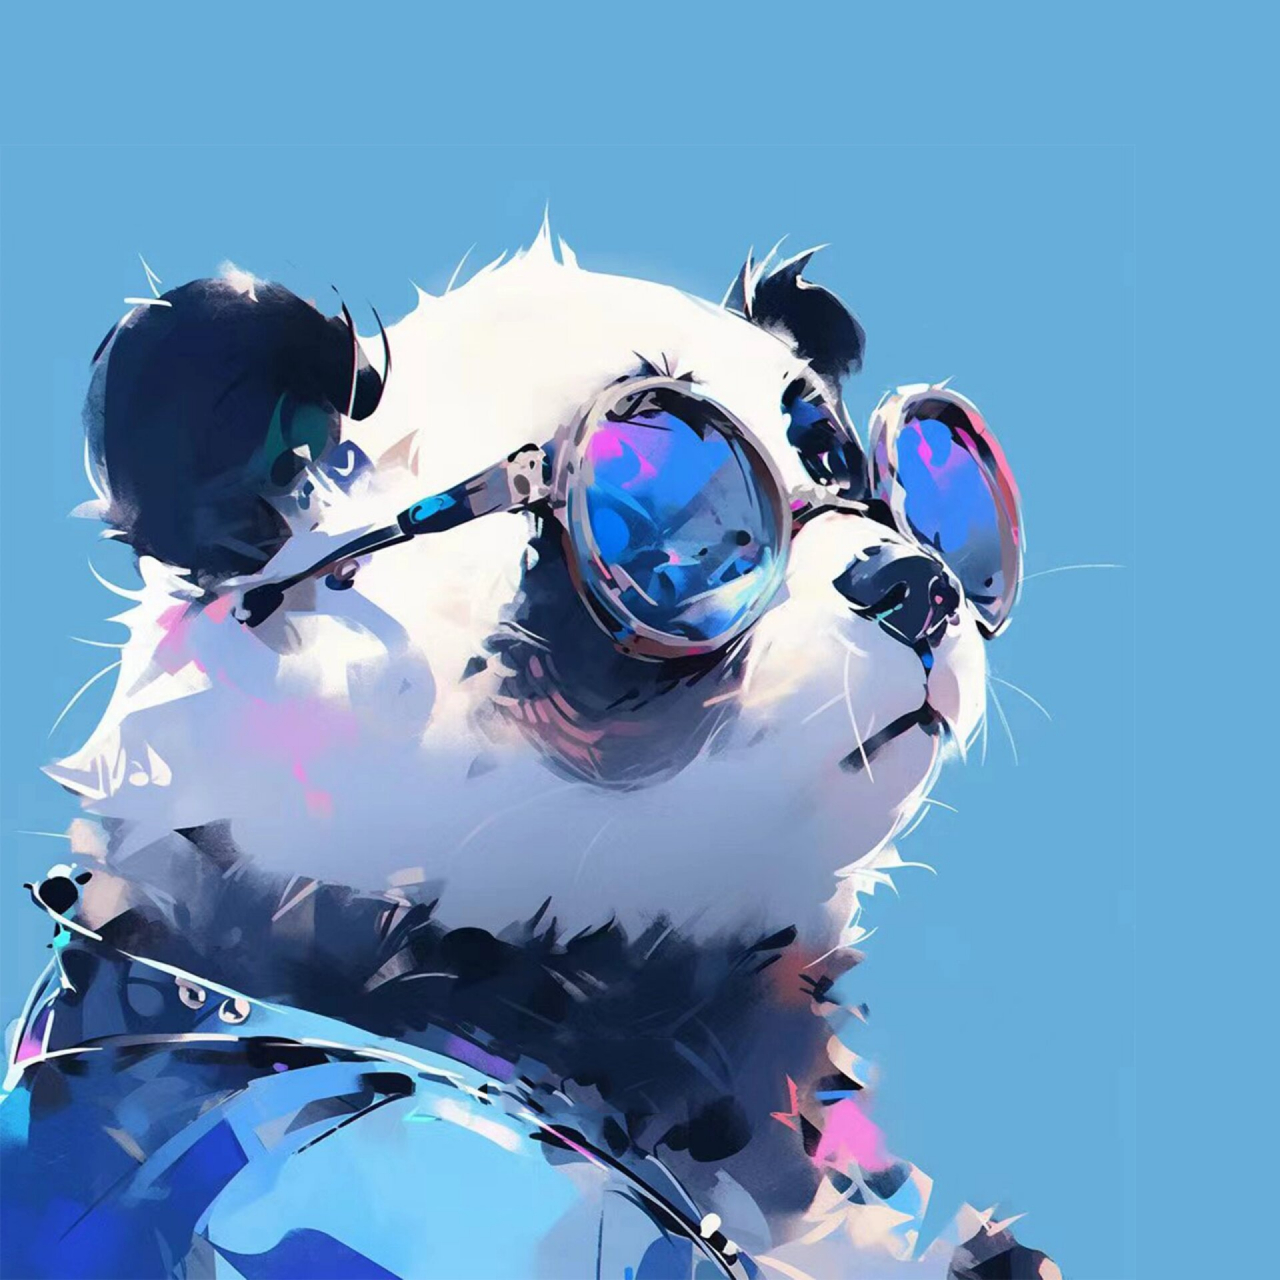 熊猫头戴眼镜图片